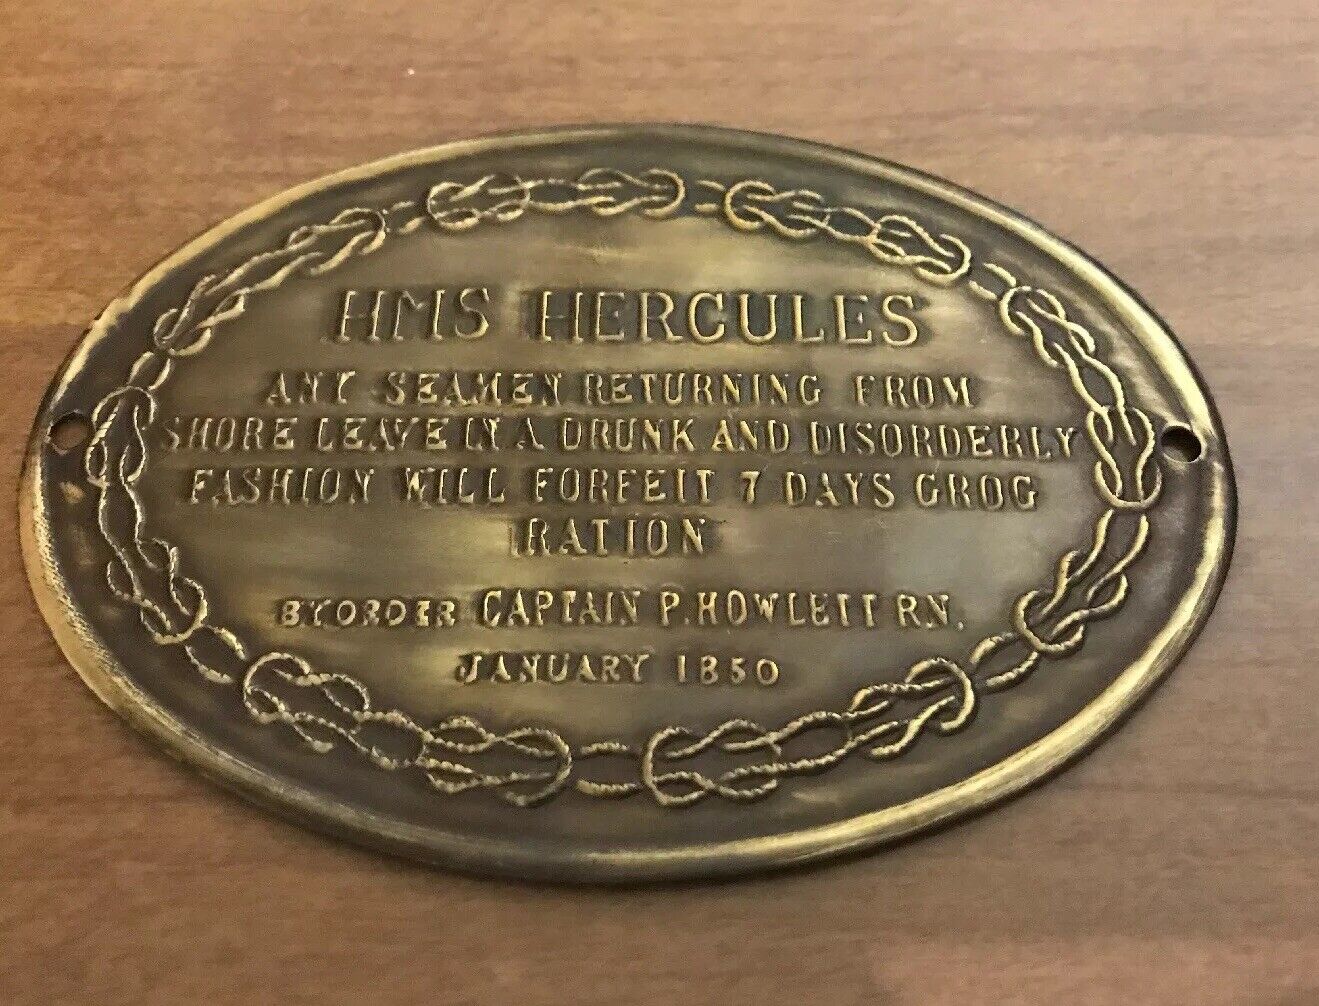 HMS Hercules Copper Plaque - 1850 (replica) Captain P. Howlett R.N. Vintage